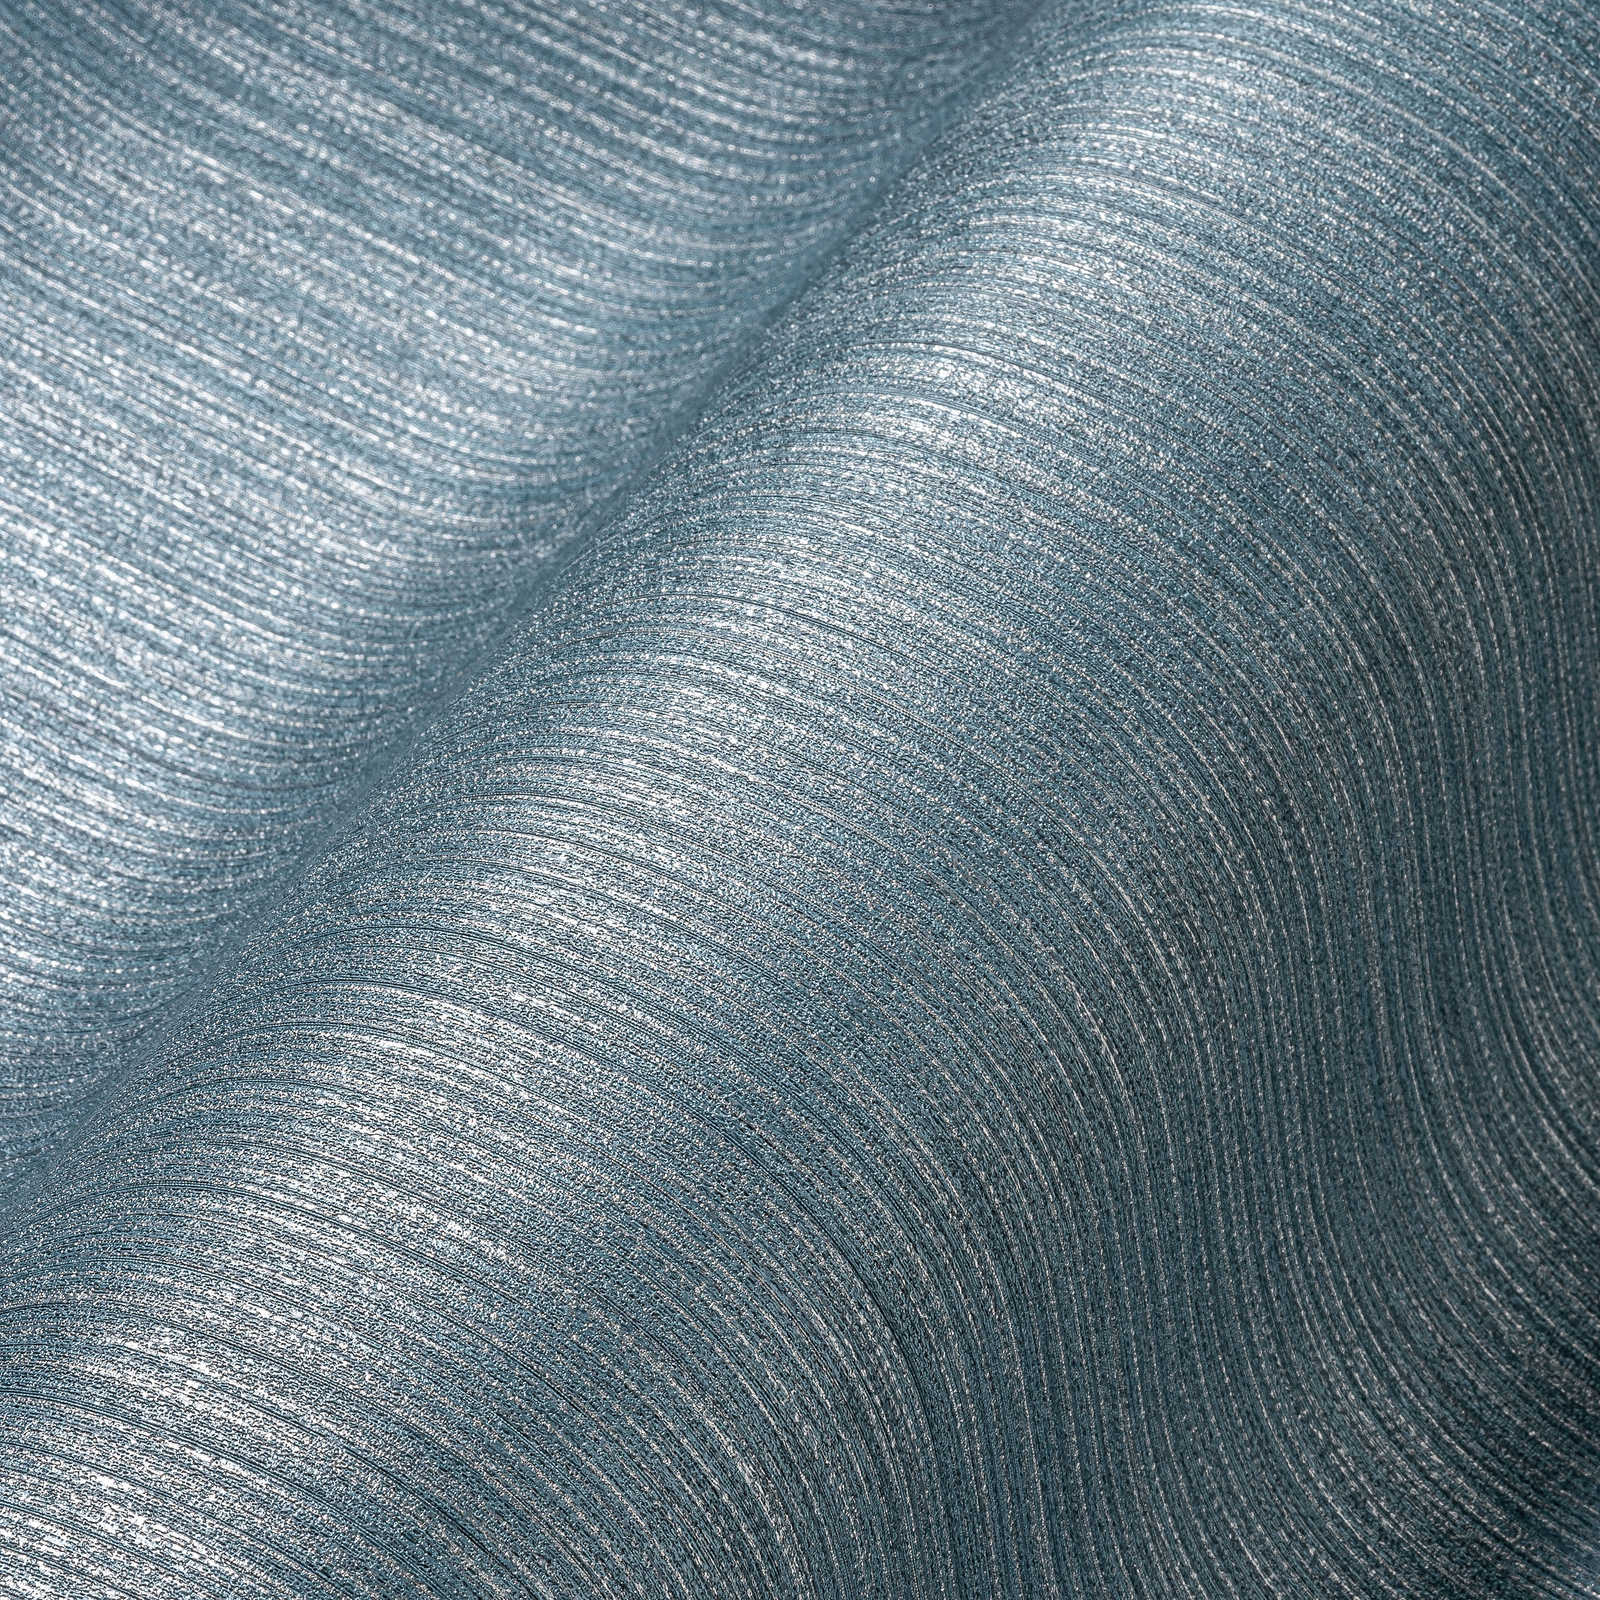             Papel pintado unitario con aspecto textil gris-azul - azul, metálico
        